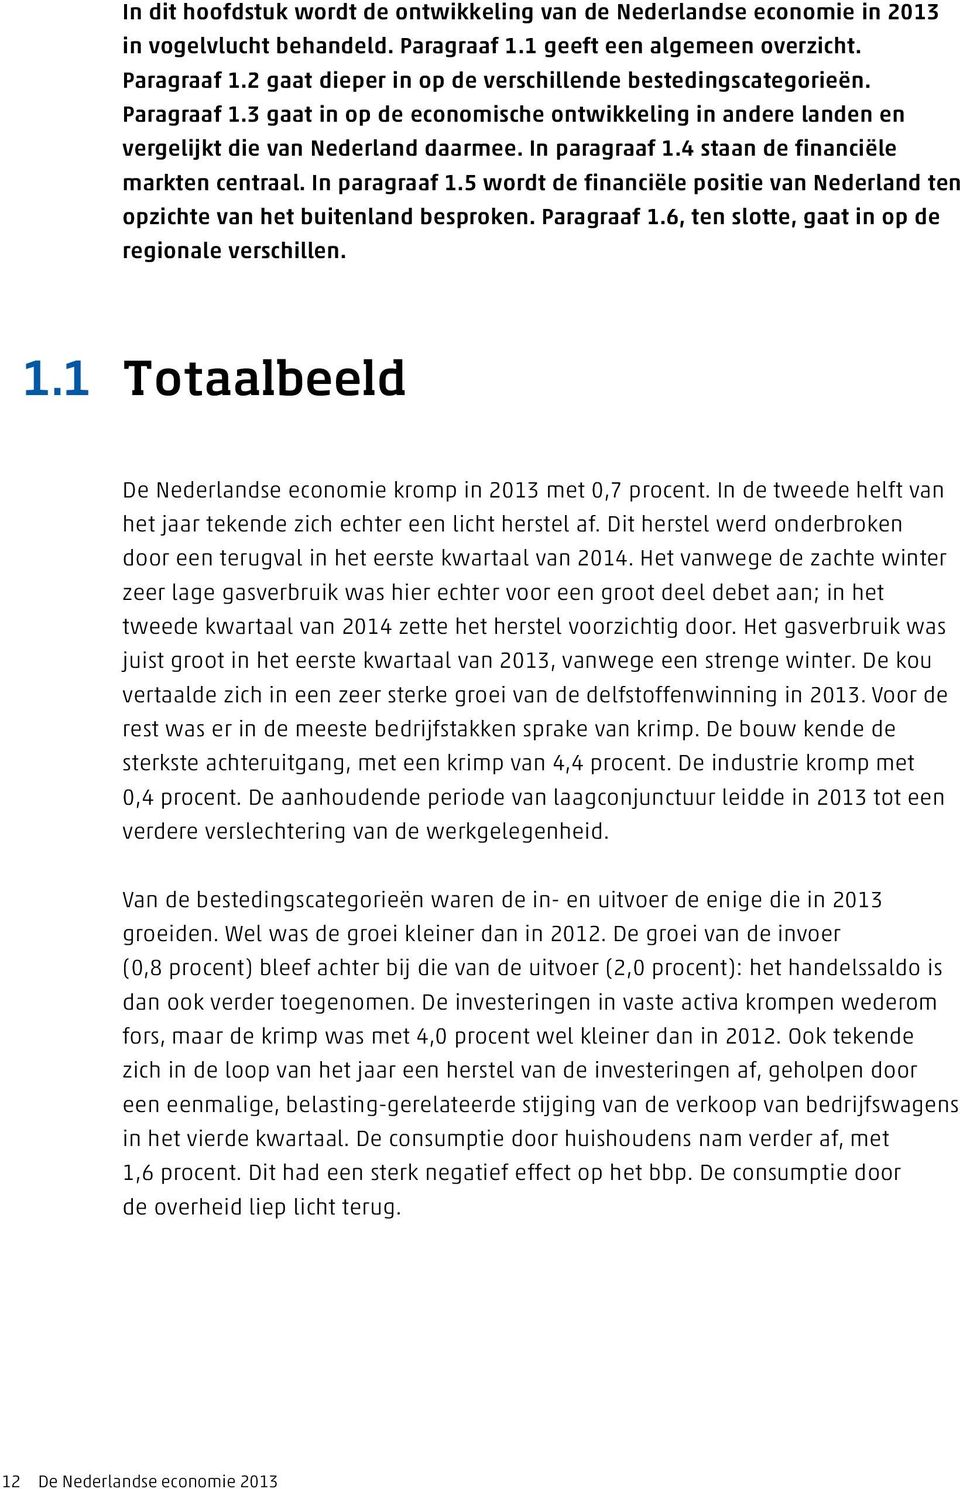 4 staan de financiële markten centraal. In paragraaf 1.5 wordt de financiële positie van Nederland ten opzichte van het buitenland besproken. Paragraaf 1.